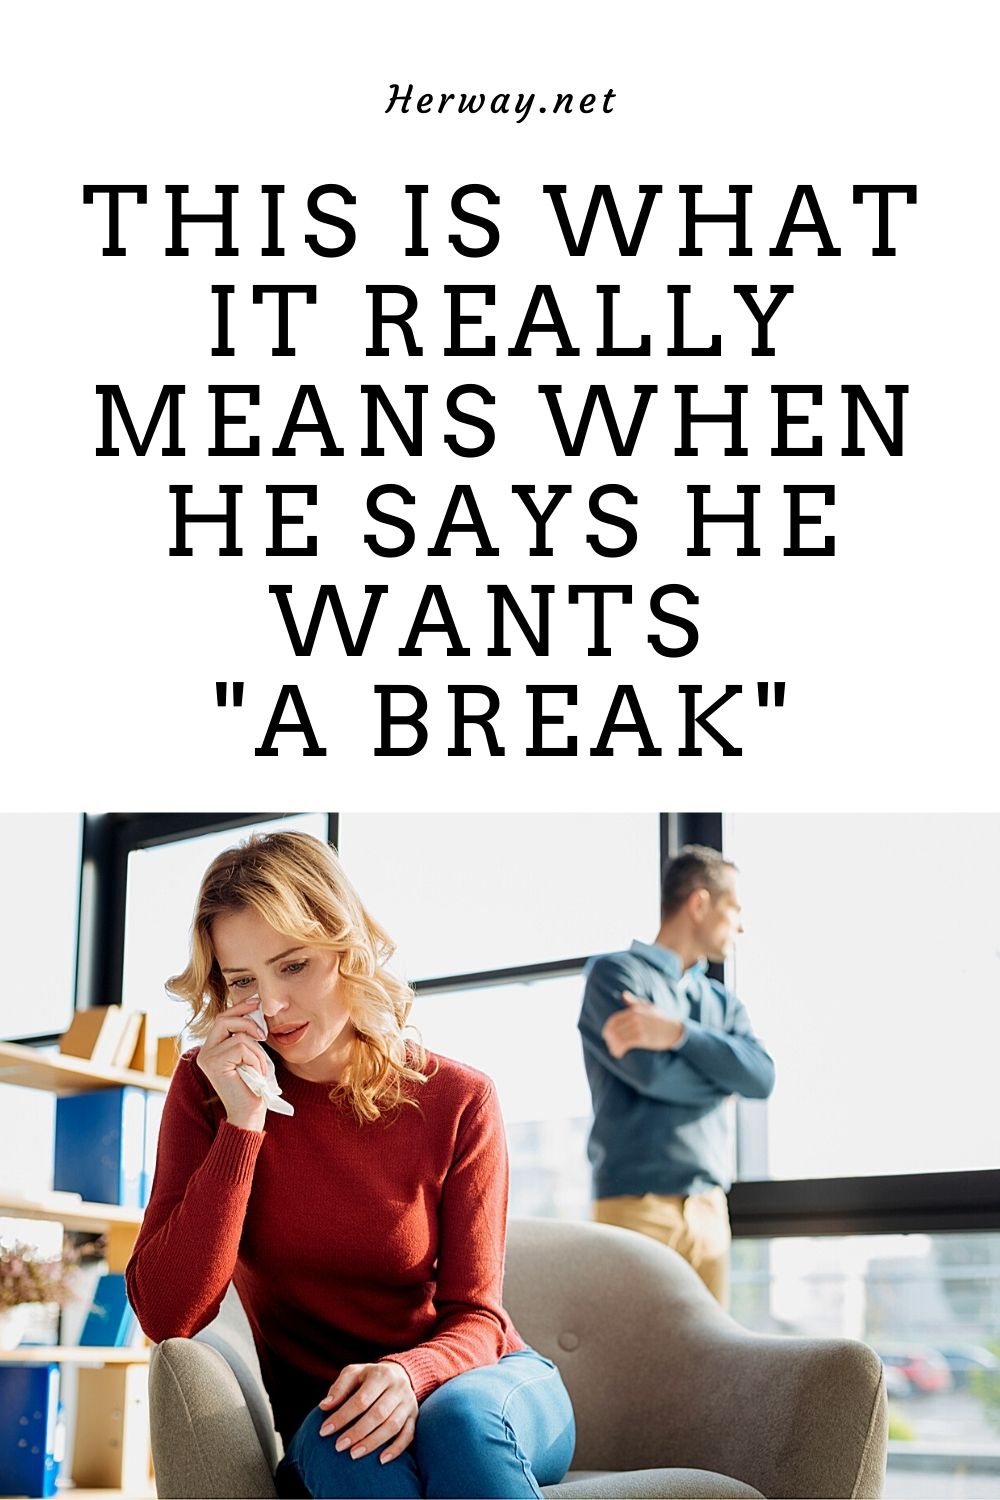  Questo è ciò che significa veramente quando dice che vuole "una pausa"